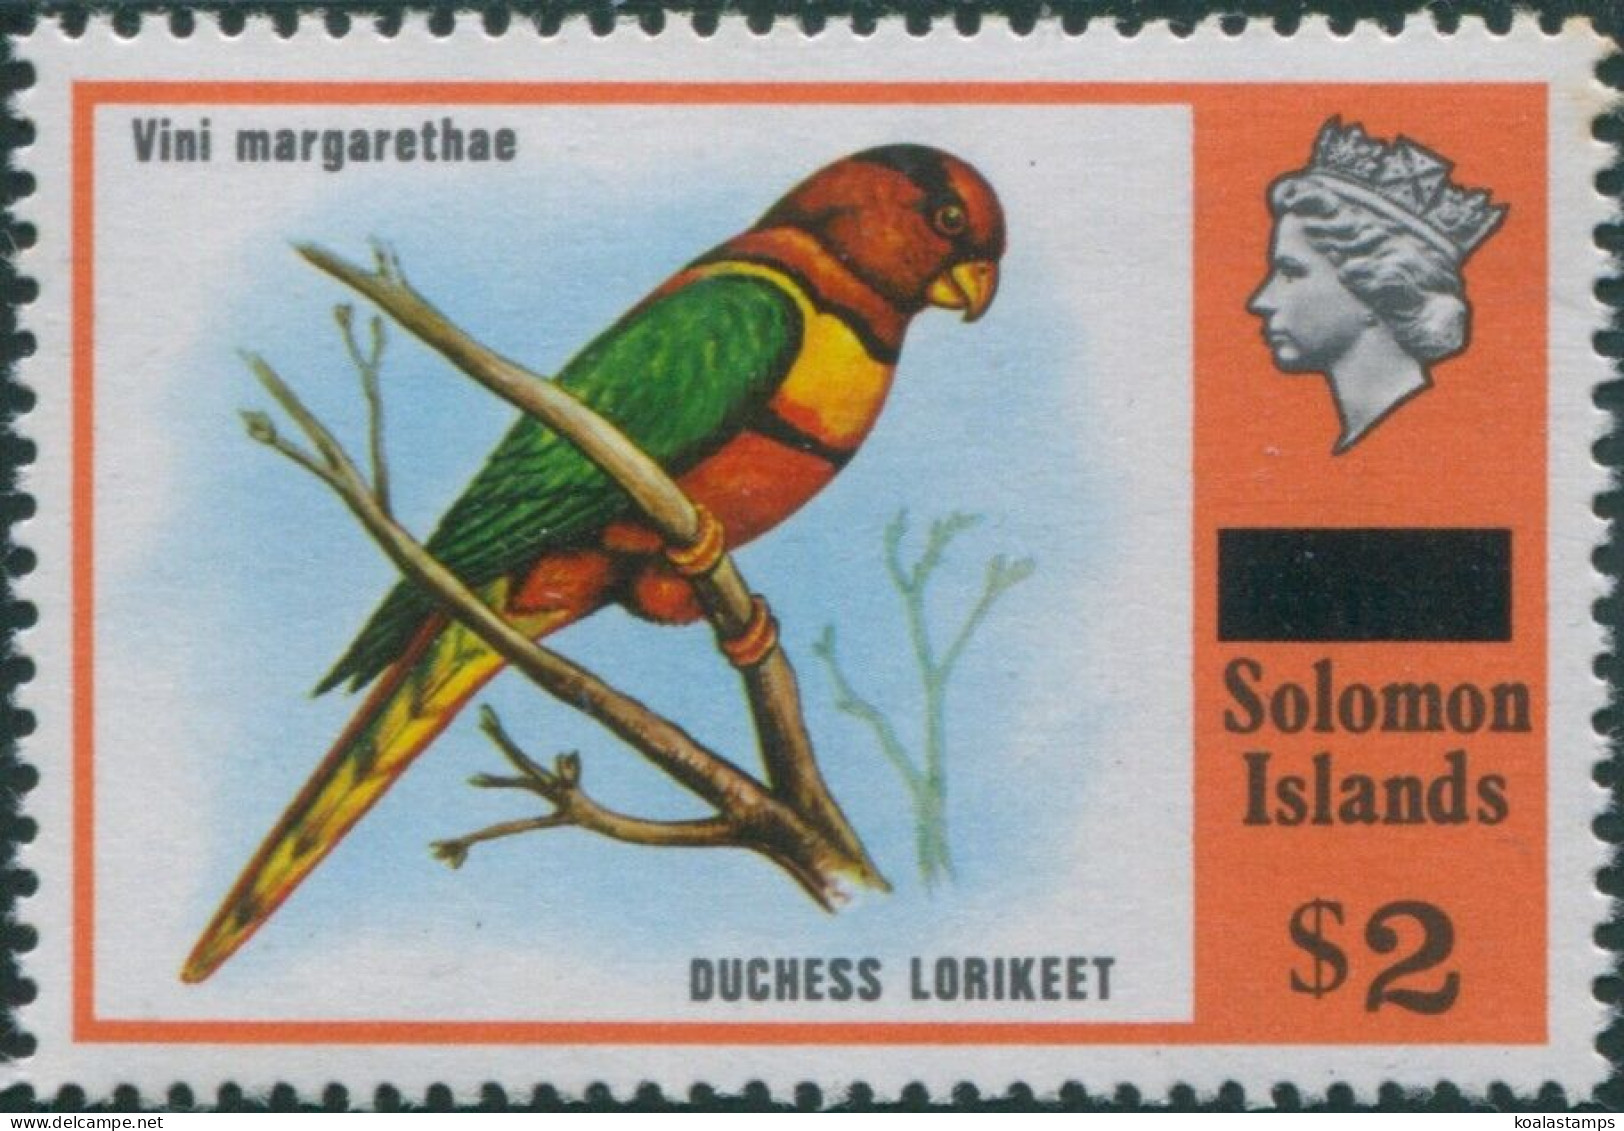 Solomon Islands 1975 SG299 $2 Duchess Lorikeet MNH - Salomoninseln (Salomonen 1978-...)